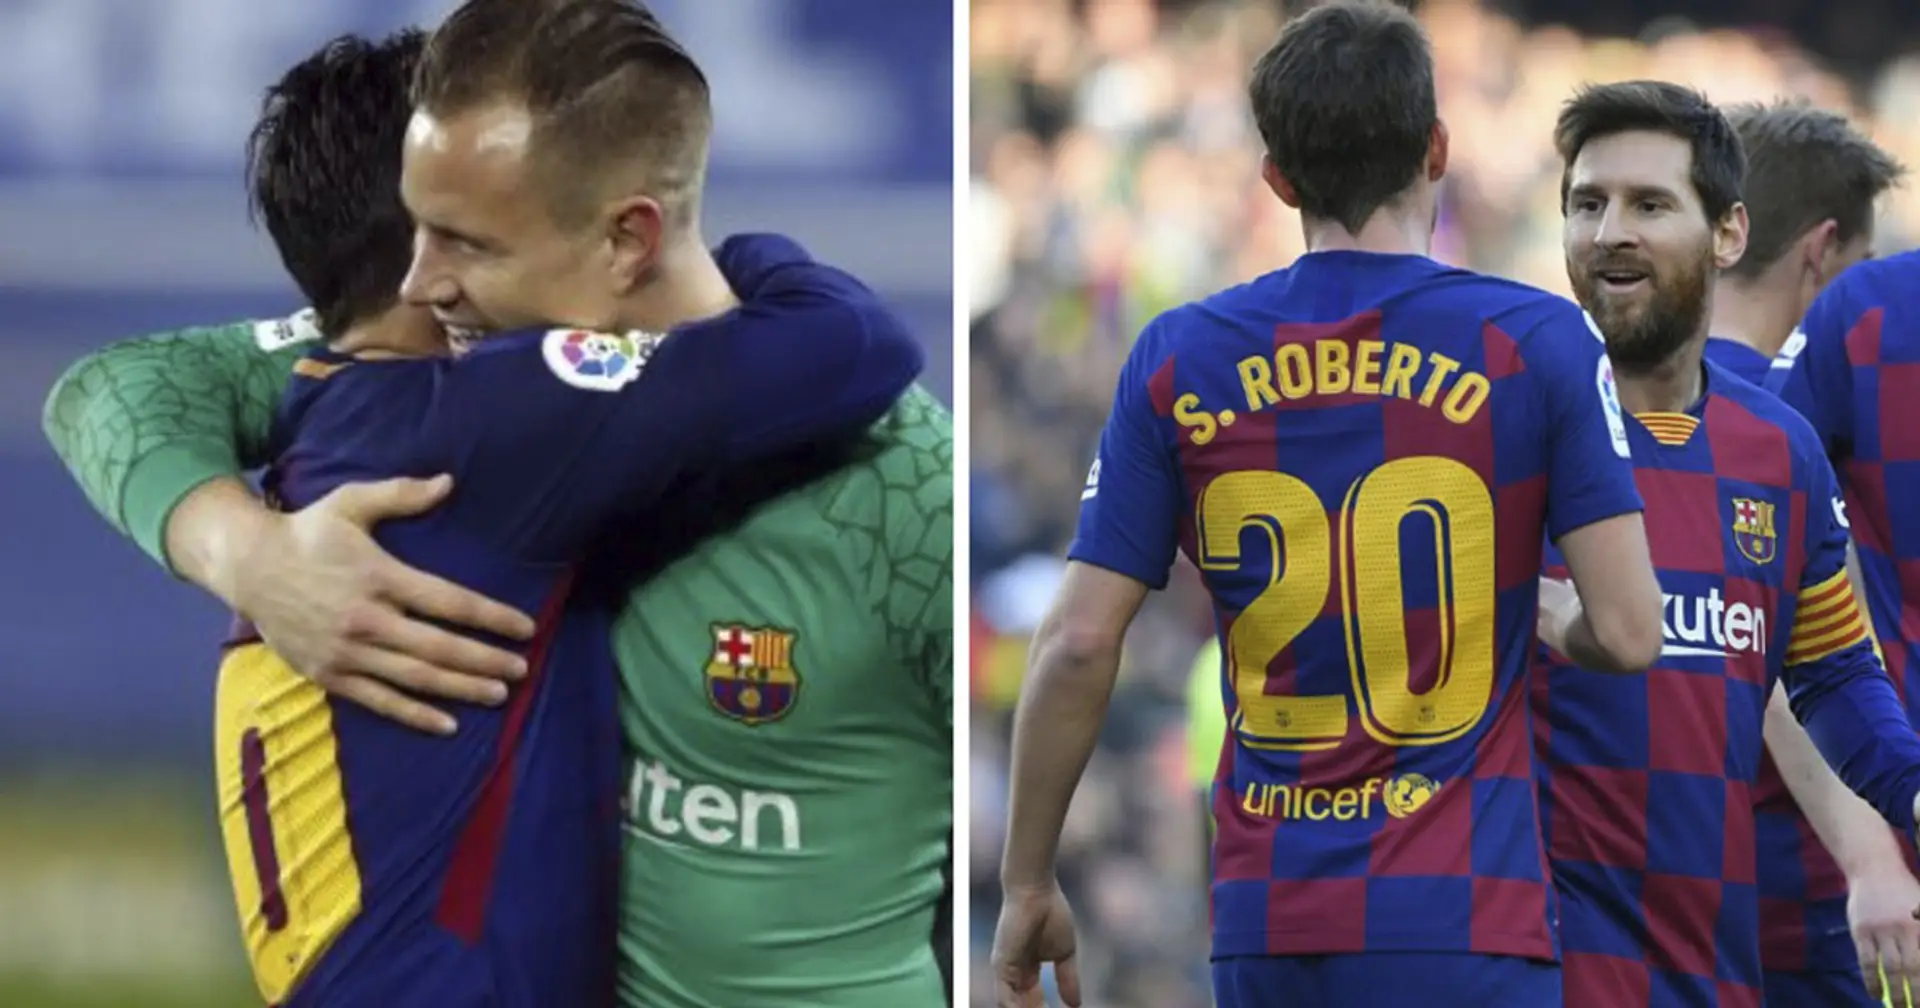 "Wir warten darauf sehr": Barcelonas Kapitäne Ter Stegen und Roberto drängen auf die Rückkehr von Messi